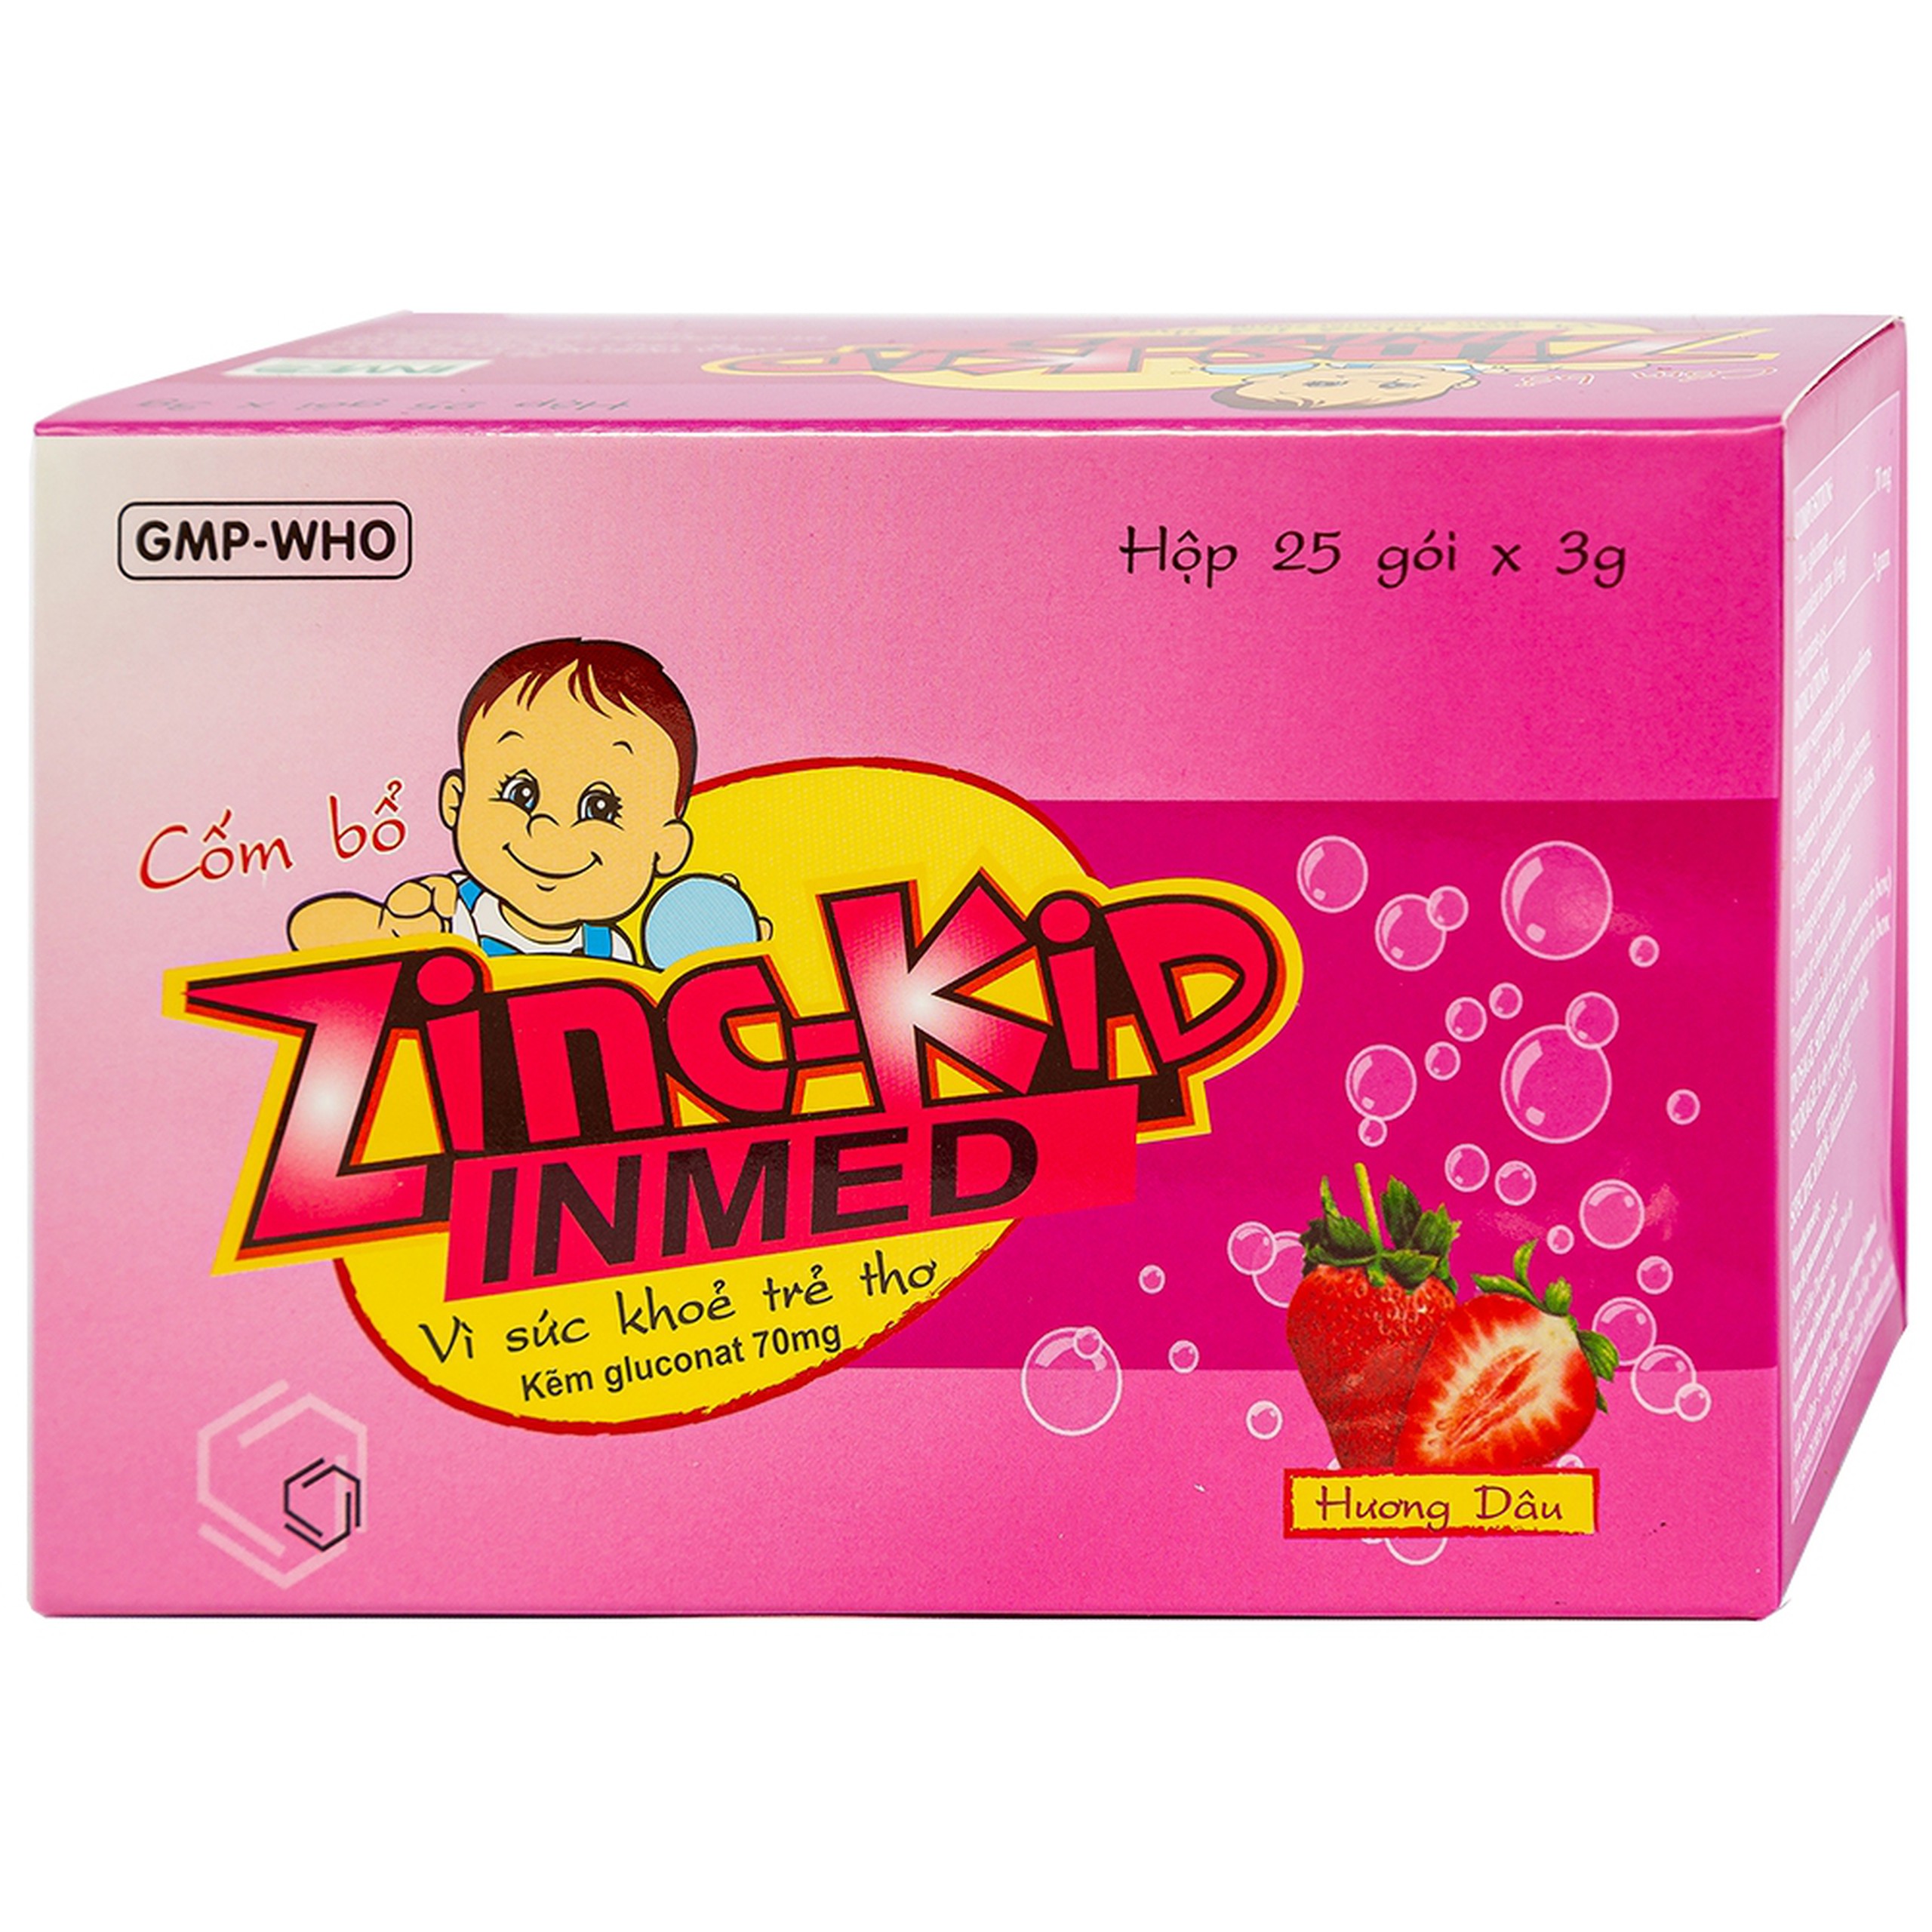 Cốm bổ Zinc-Kid Inmed Nam Hà hương dâu, bổ sung kẽm cho trẻ em (25 gói x 3g)